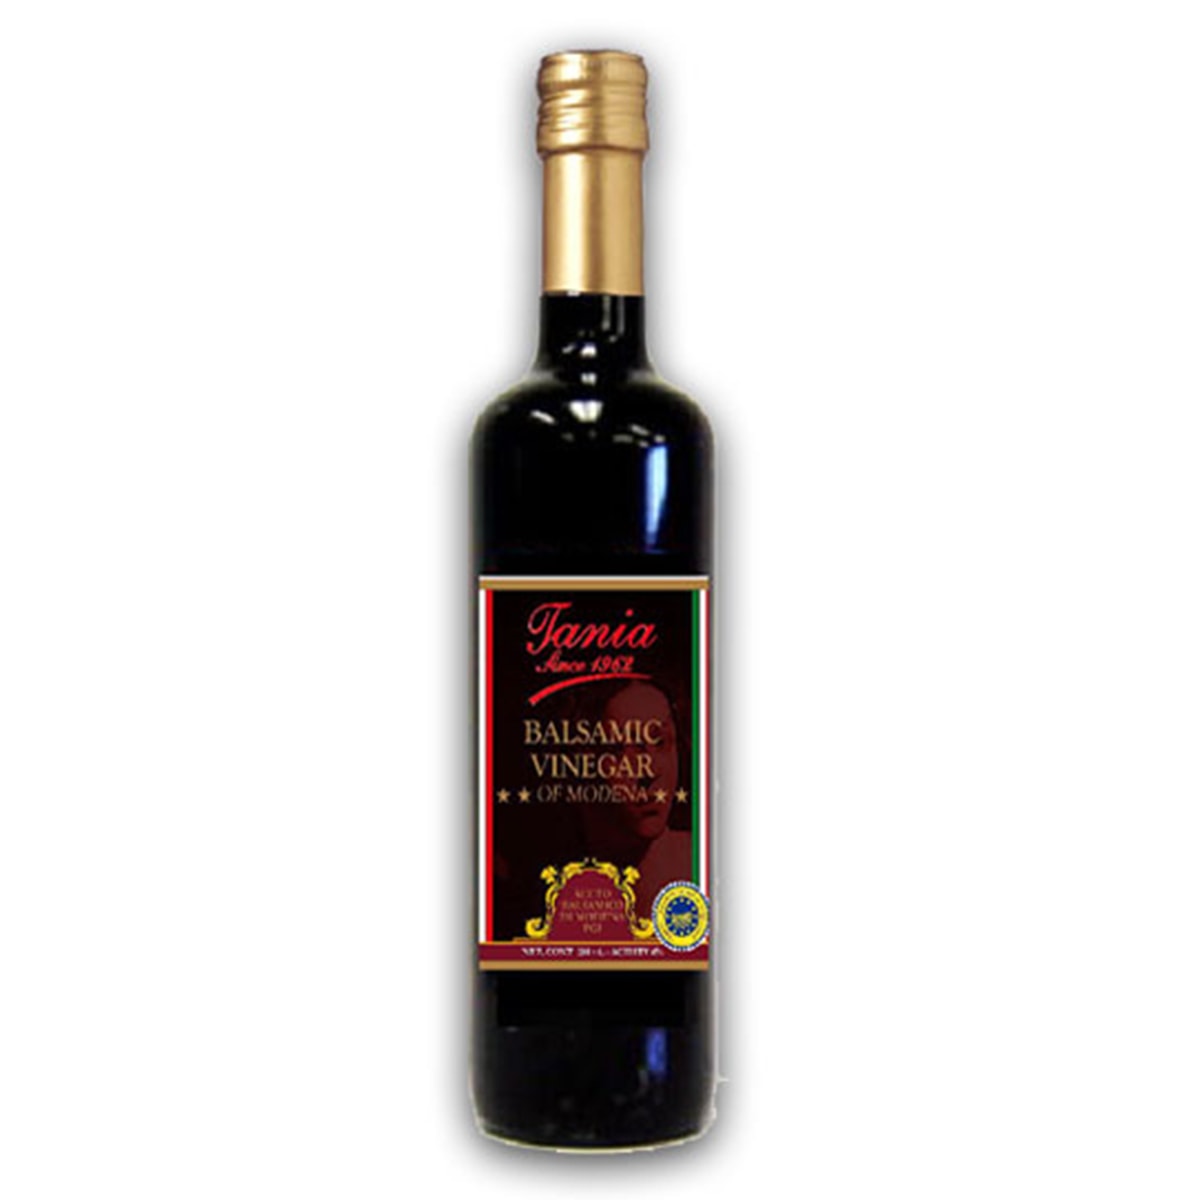 Buy Tania Balsamic Vinegar of Modena - 500 ml